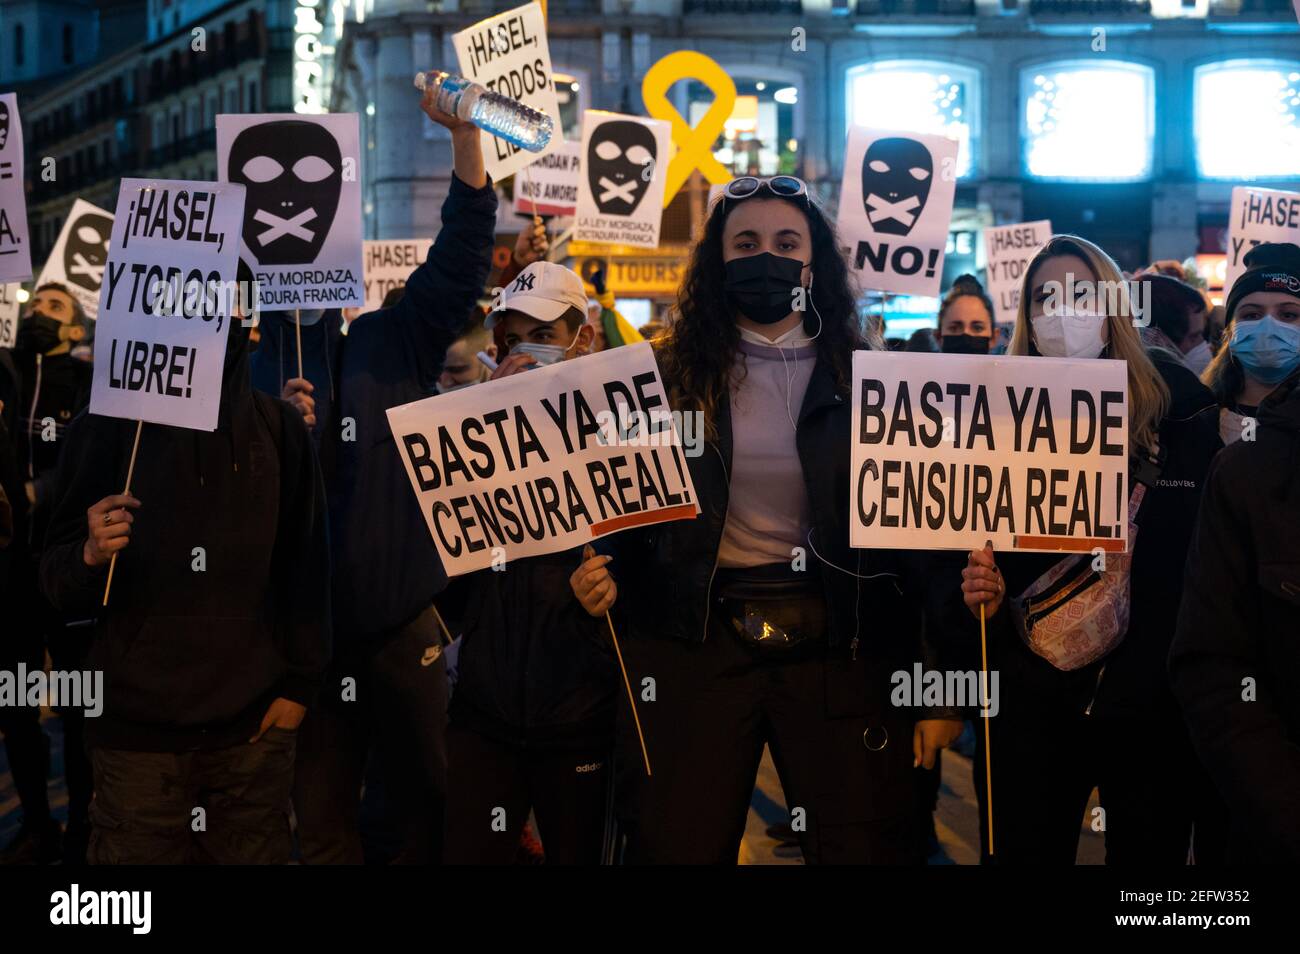 Madrid, Spanien. Februar 2021, 17th. Demonstranten mit Plakaten während einer Demonstration gegen die Inhaftierung des spanischen Rappers Pablo Hasel für einige Liedtexte und Tweets, die die spanische Monarchie kritisieren. Quelle: Marcos del Mazo/Alamy Live News Stockfoto